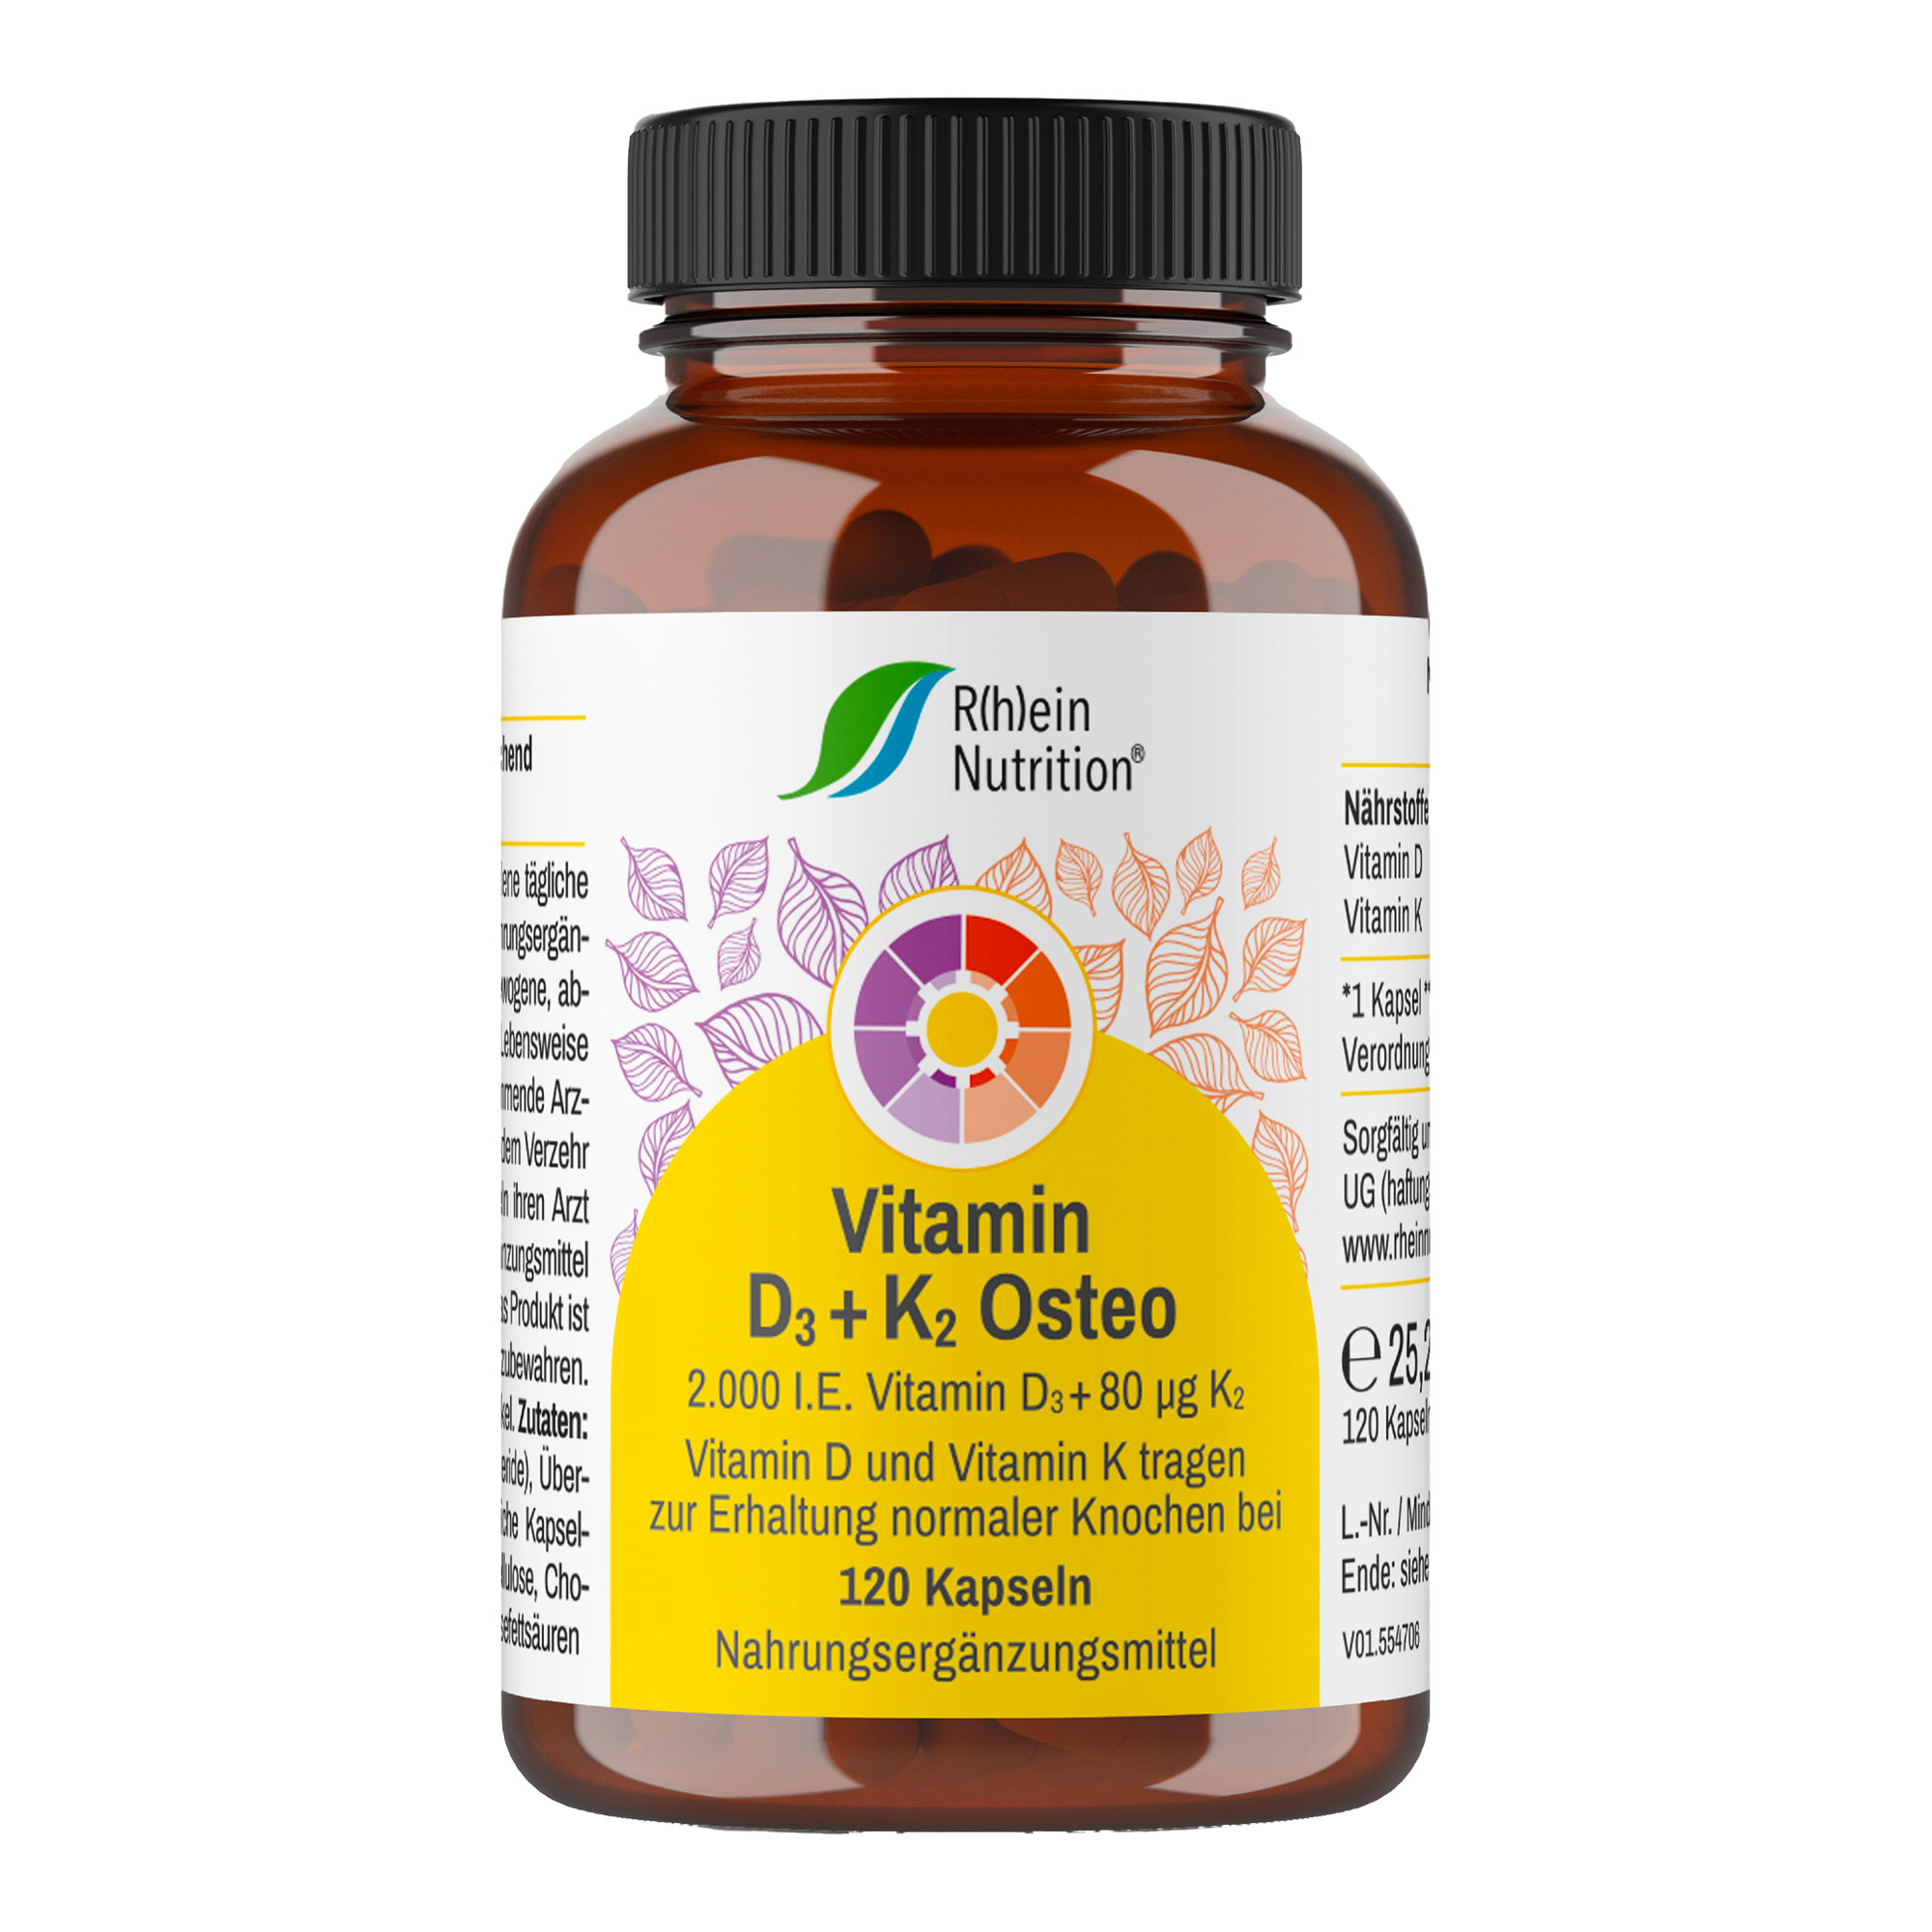 Nahrungsergänzungsmittel mit Vitamin D und Vitamin K.